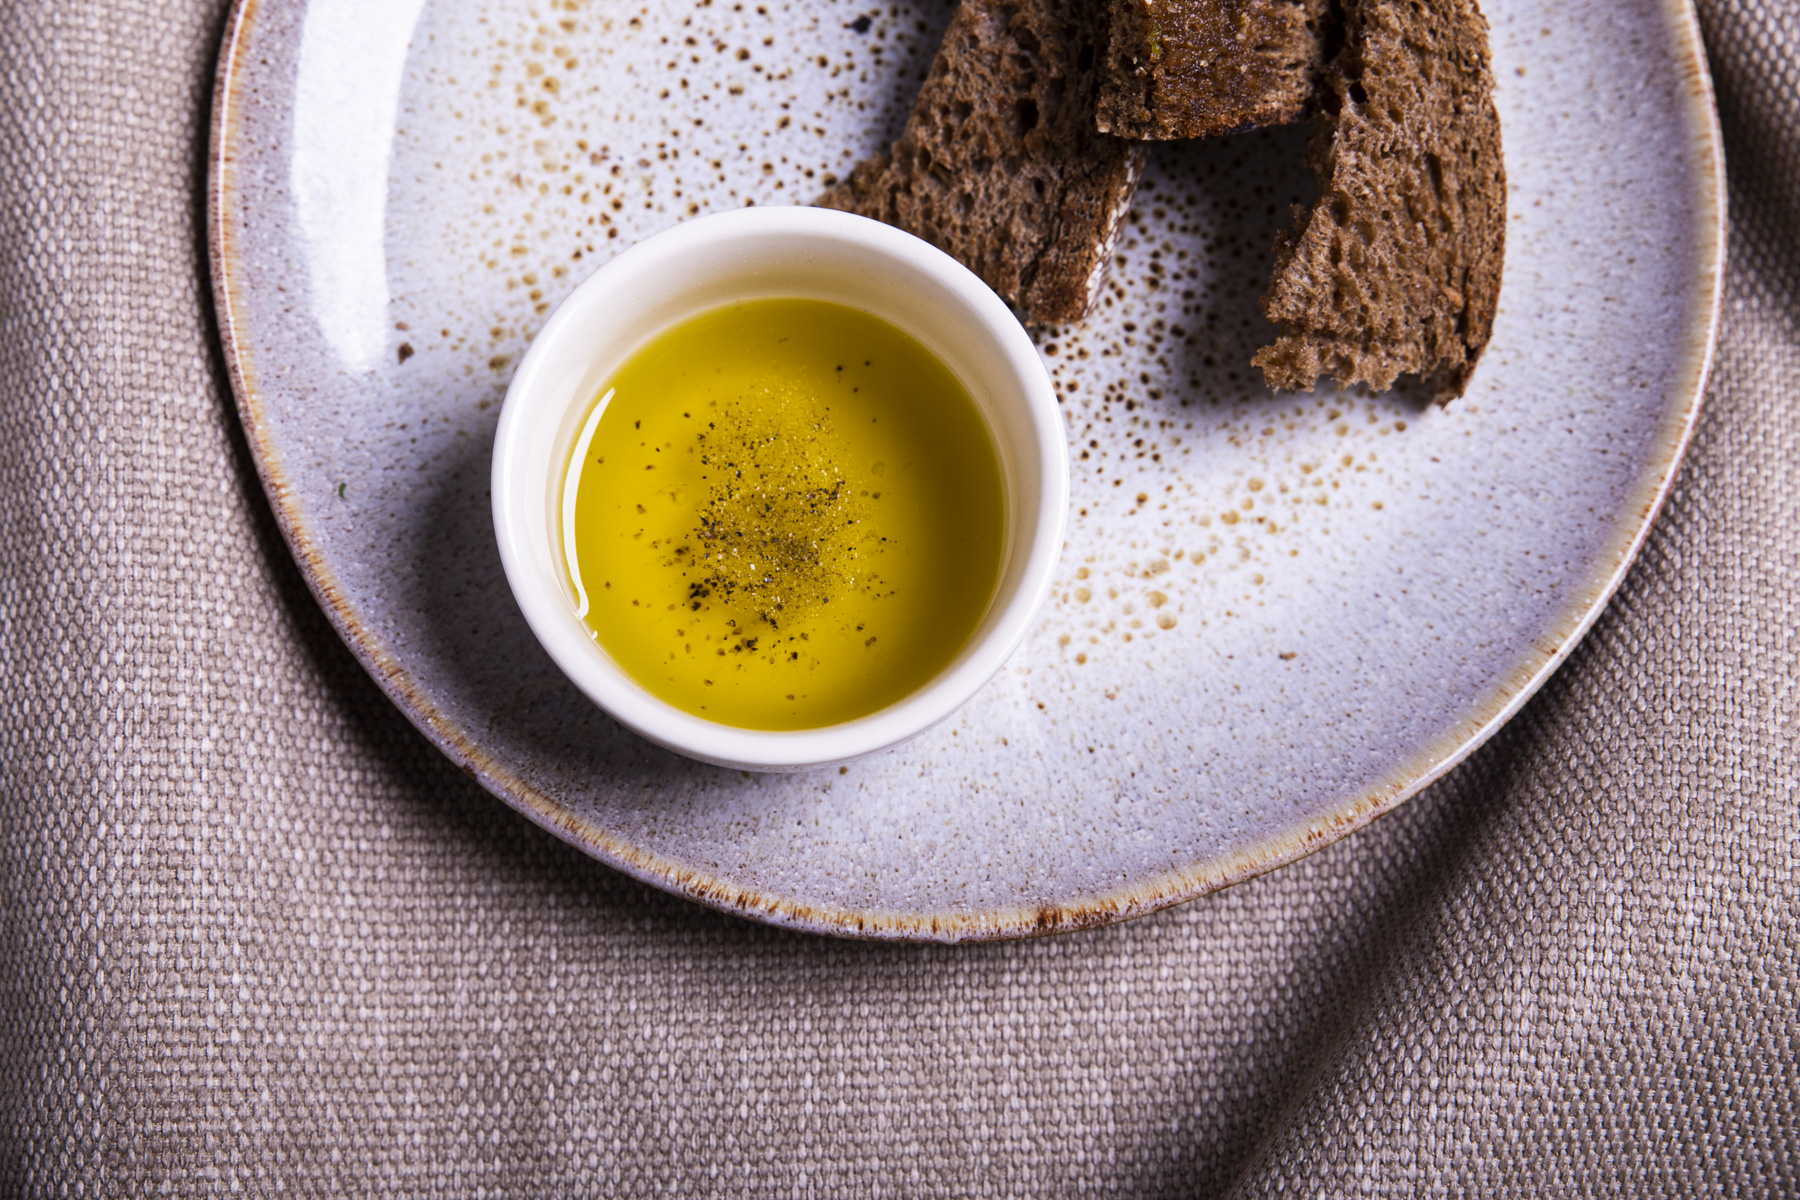 Wat is oxidatie van olijfolie nu precies?